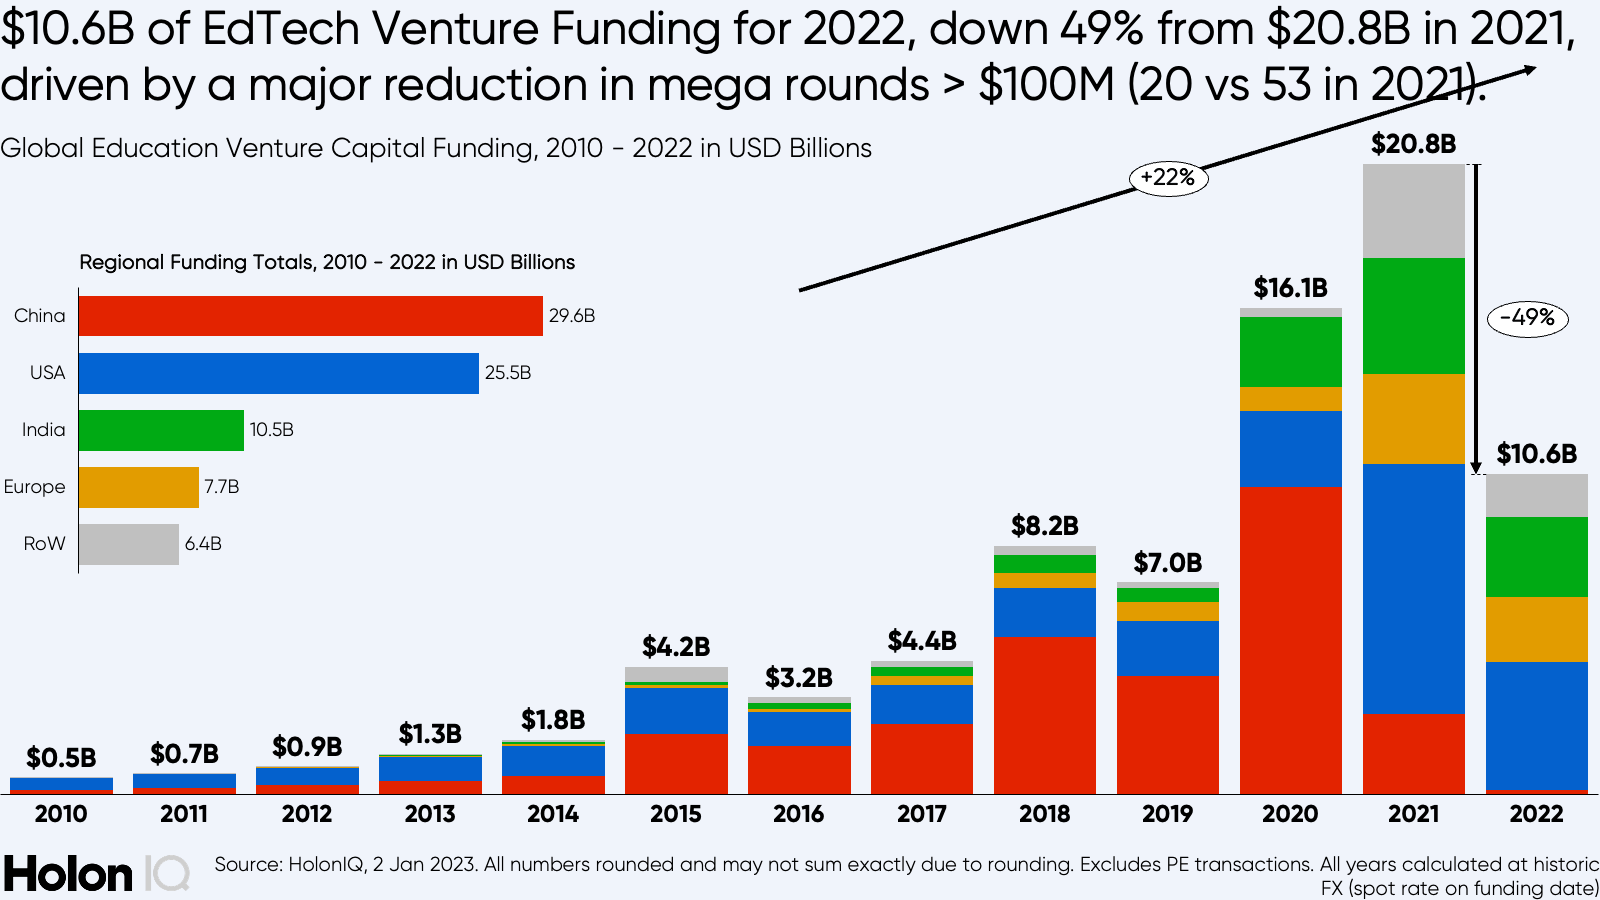 EdTech-Venture-Funding-Analysis-2022